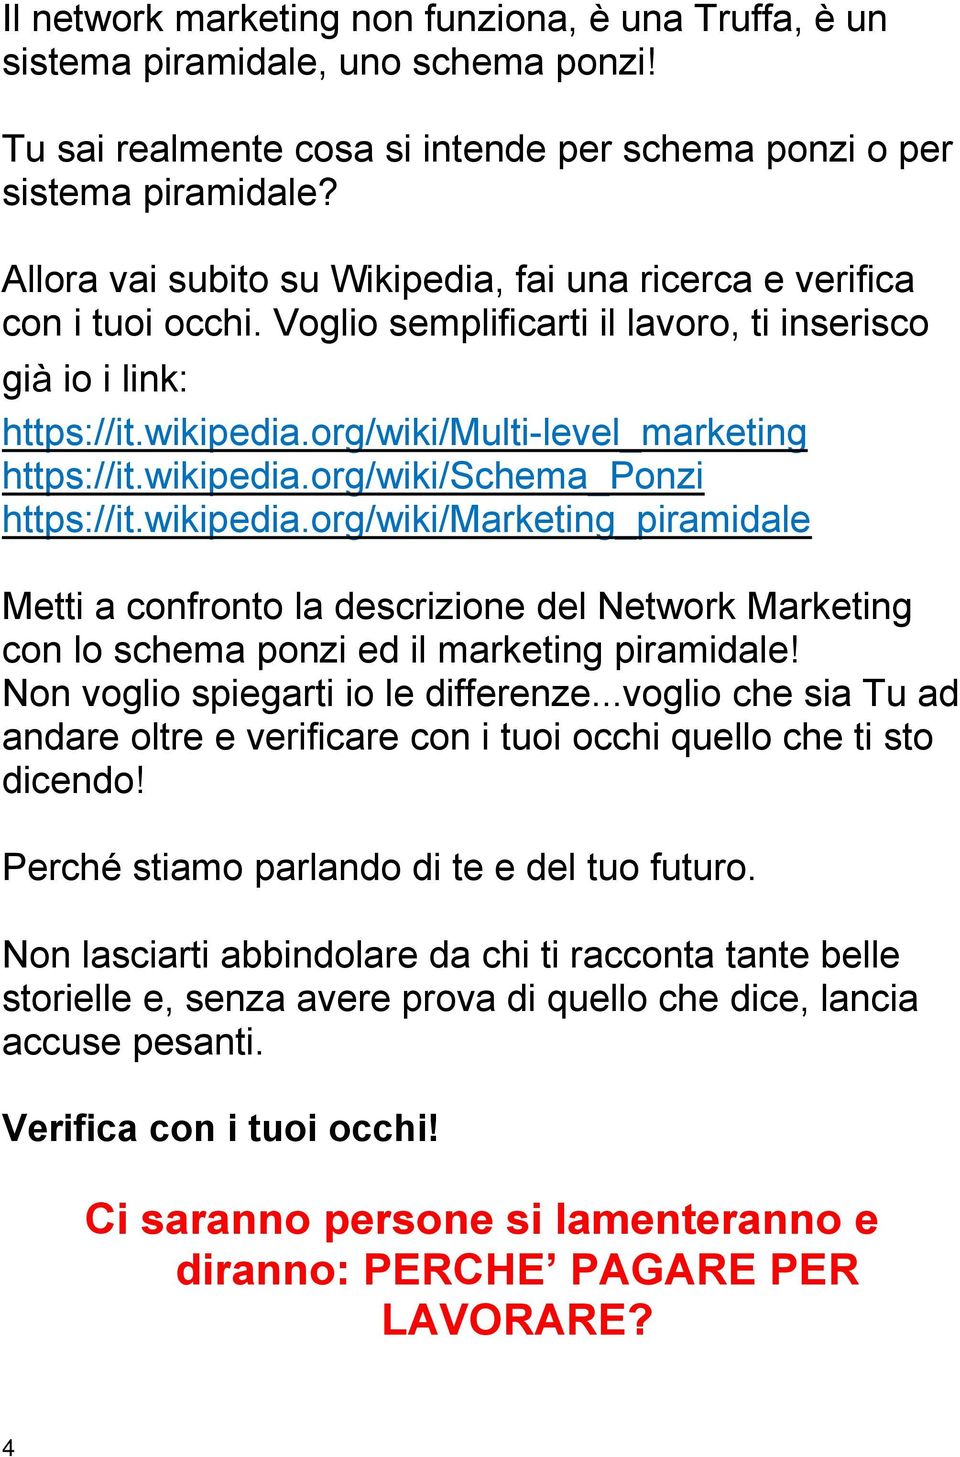 wikipedia.org/wiki/schema_ponzi https://it.wikipedia.org/wiki/marketing_piramidale Metti a confronto la descrizione del Network Marketing con lo schema ponzi ed il marketing piramidale!